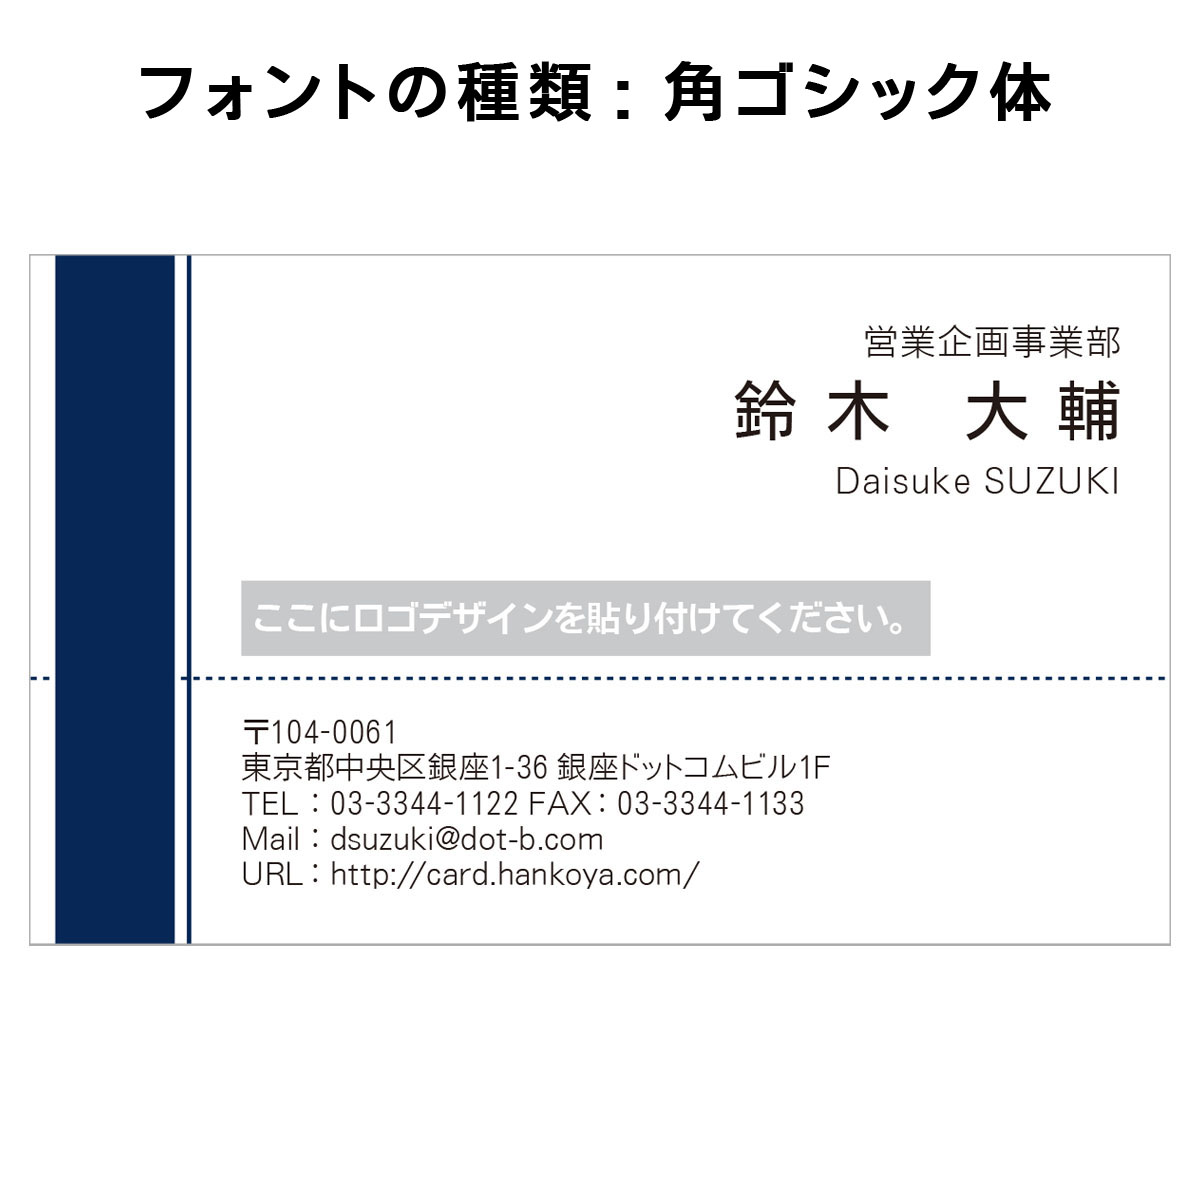 テキスト入稿名刺 ヨコ向き 両面カラー印刷 HE-05 自由入力欄(文字大)